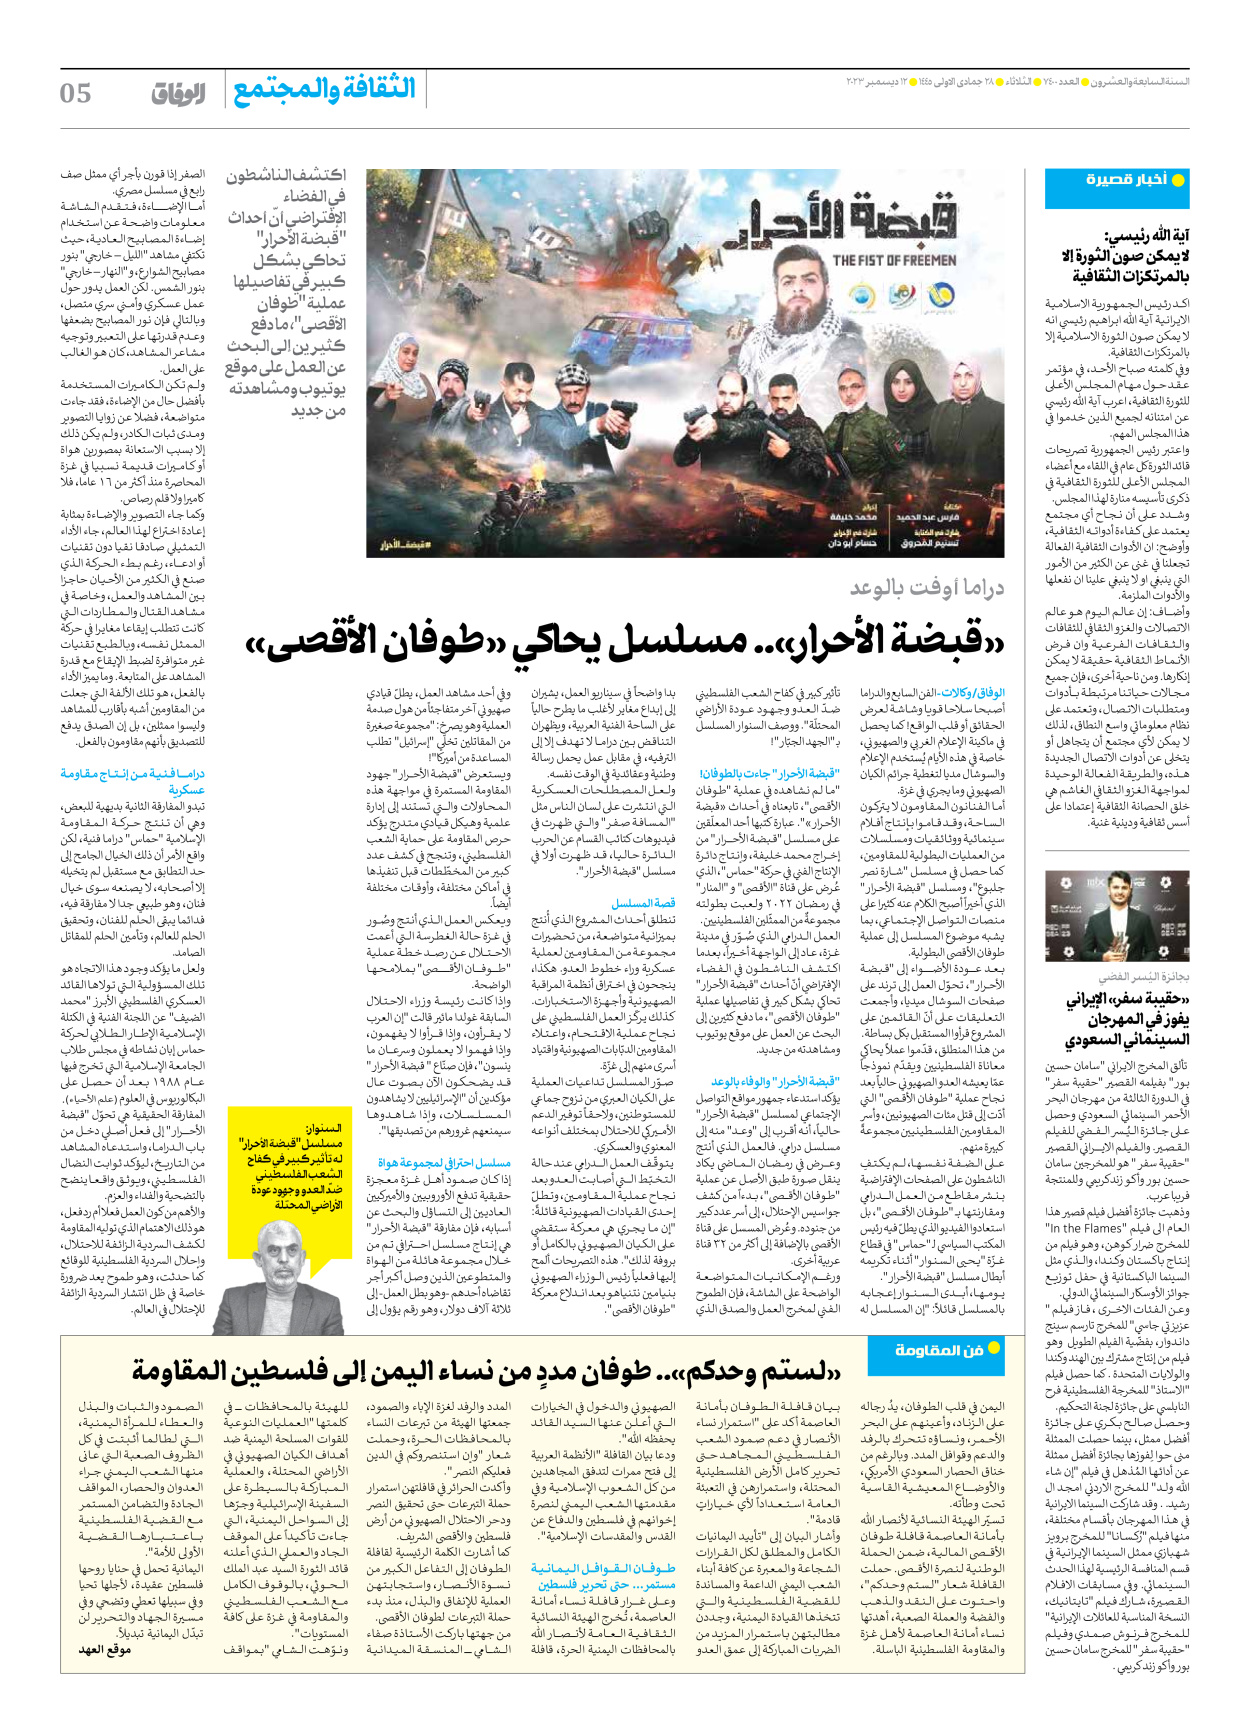 صحیفة ایران الدولیة الوفاق - العدد سبعة آلاف وأربعمائة - ١٢ ديسمبر ٢٠٢٣ - الصفحة ٥